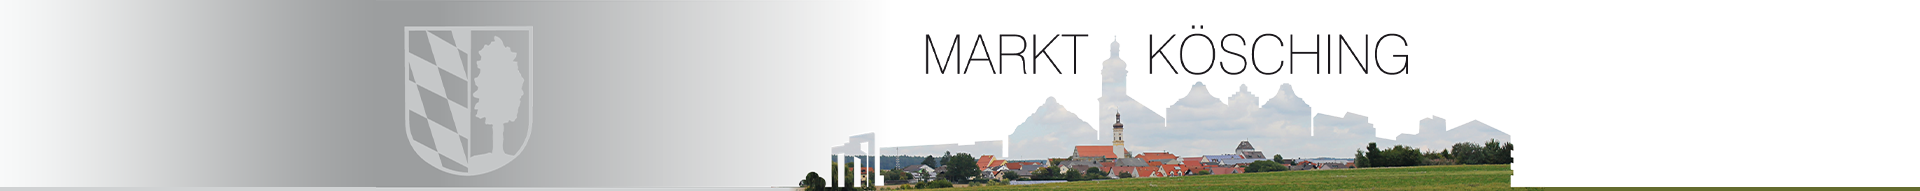 logo-markt-koesching